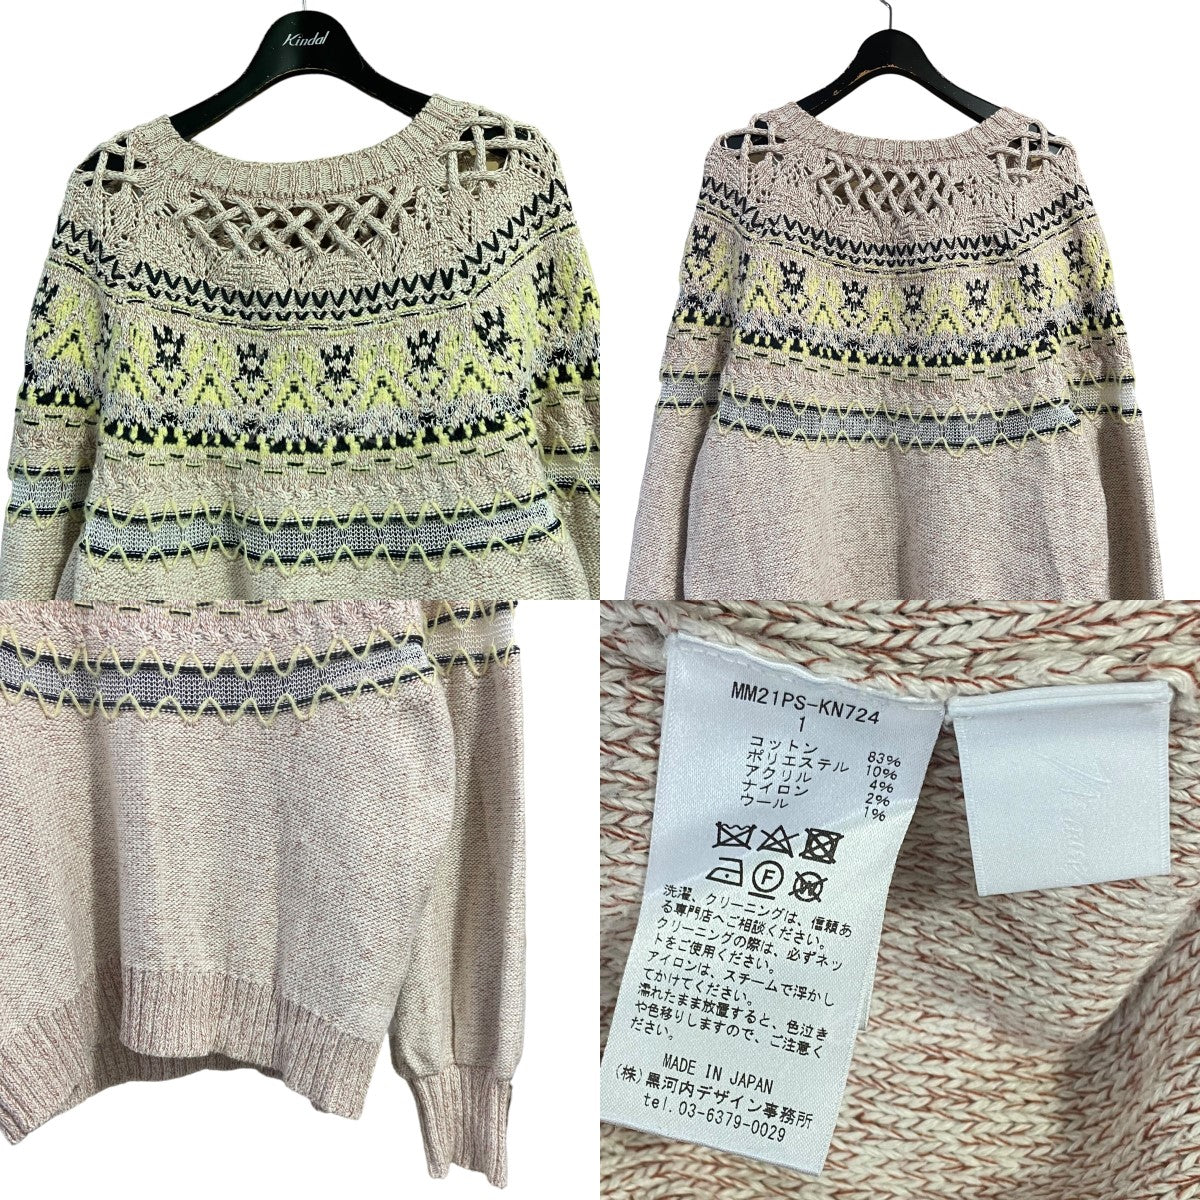 mame kurogouchi(マメクロゴウチ) 「Cotton Nordic Knit Pullover」コットンノルディックニット